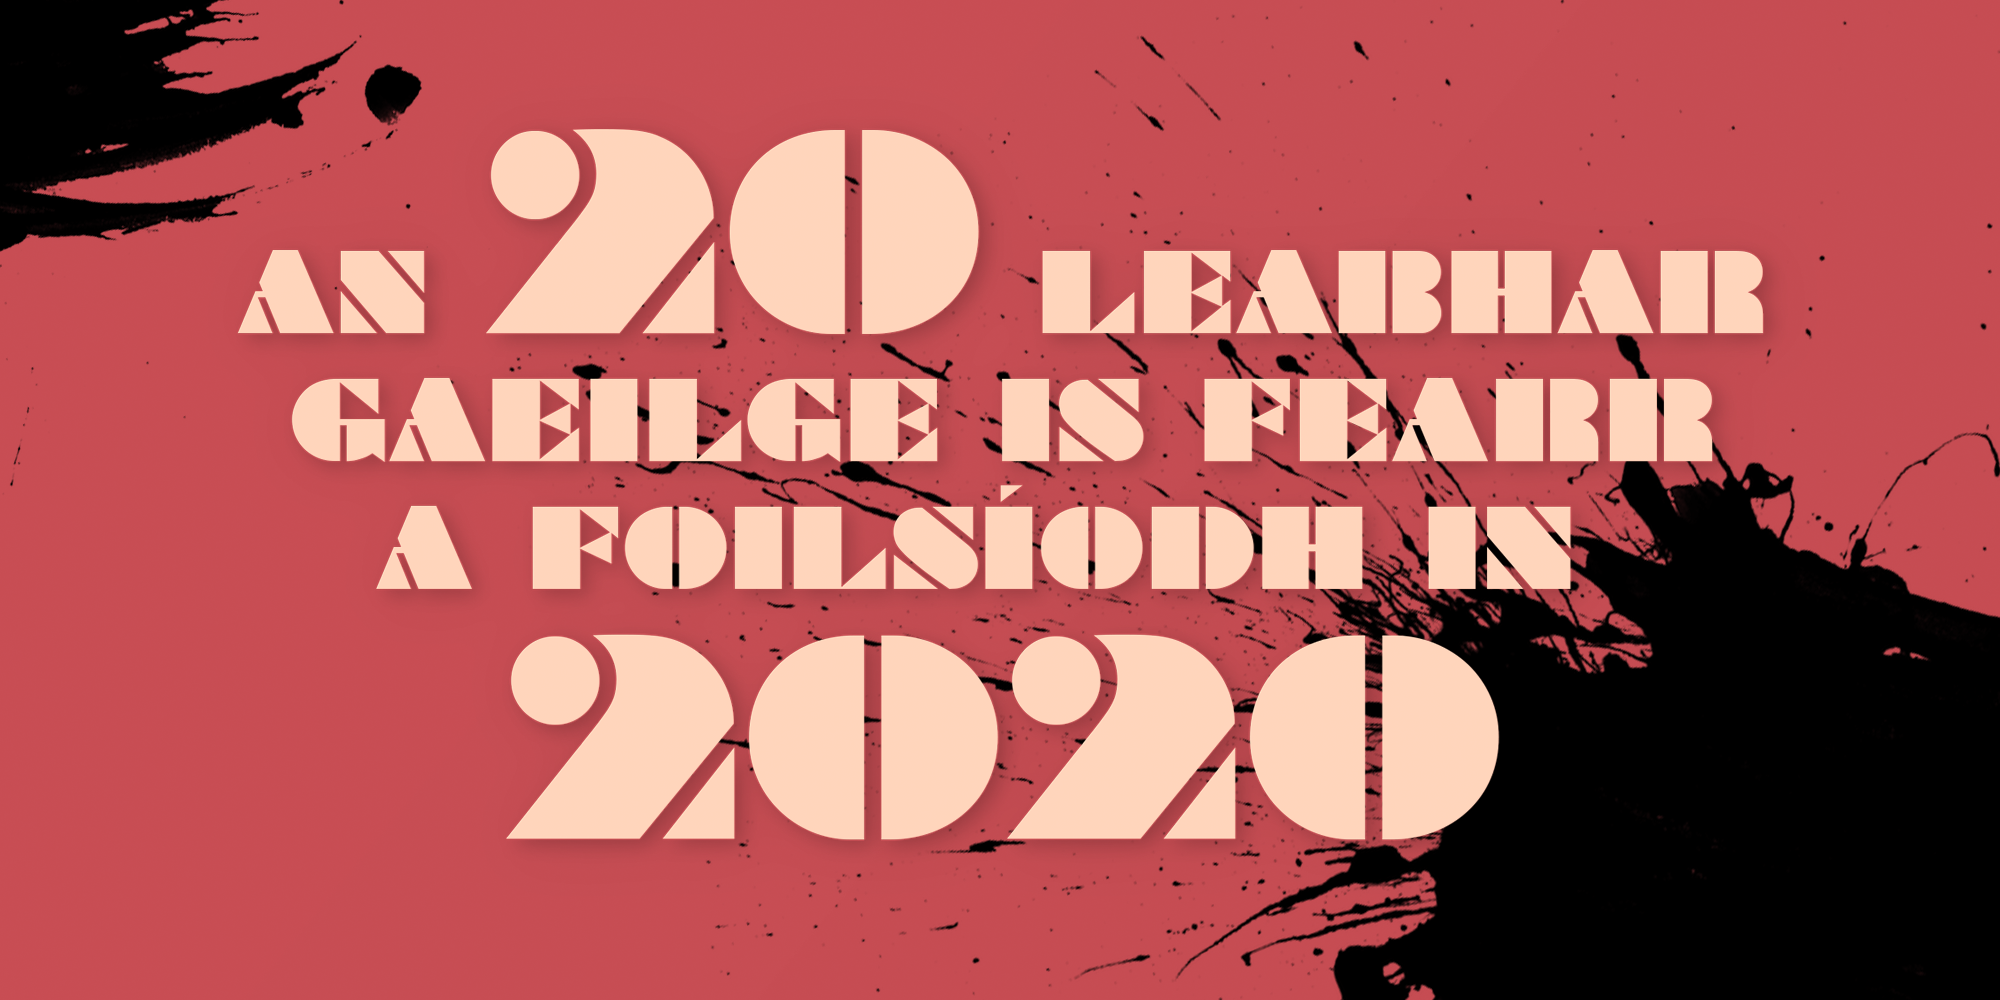 An 20 leabhar Gaeilge is fearr a foilsíodh in 2020… (cuid I, 20-10)